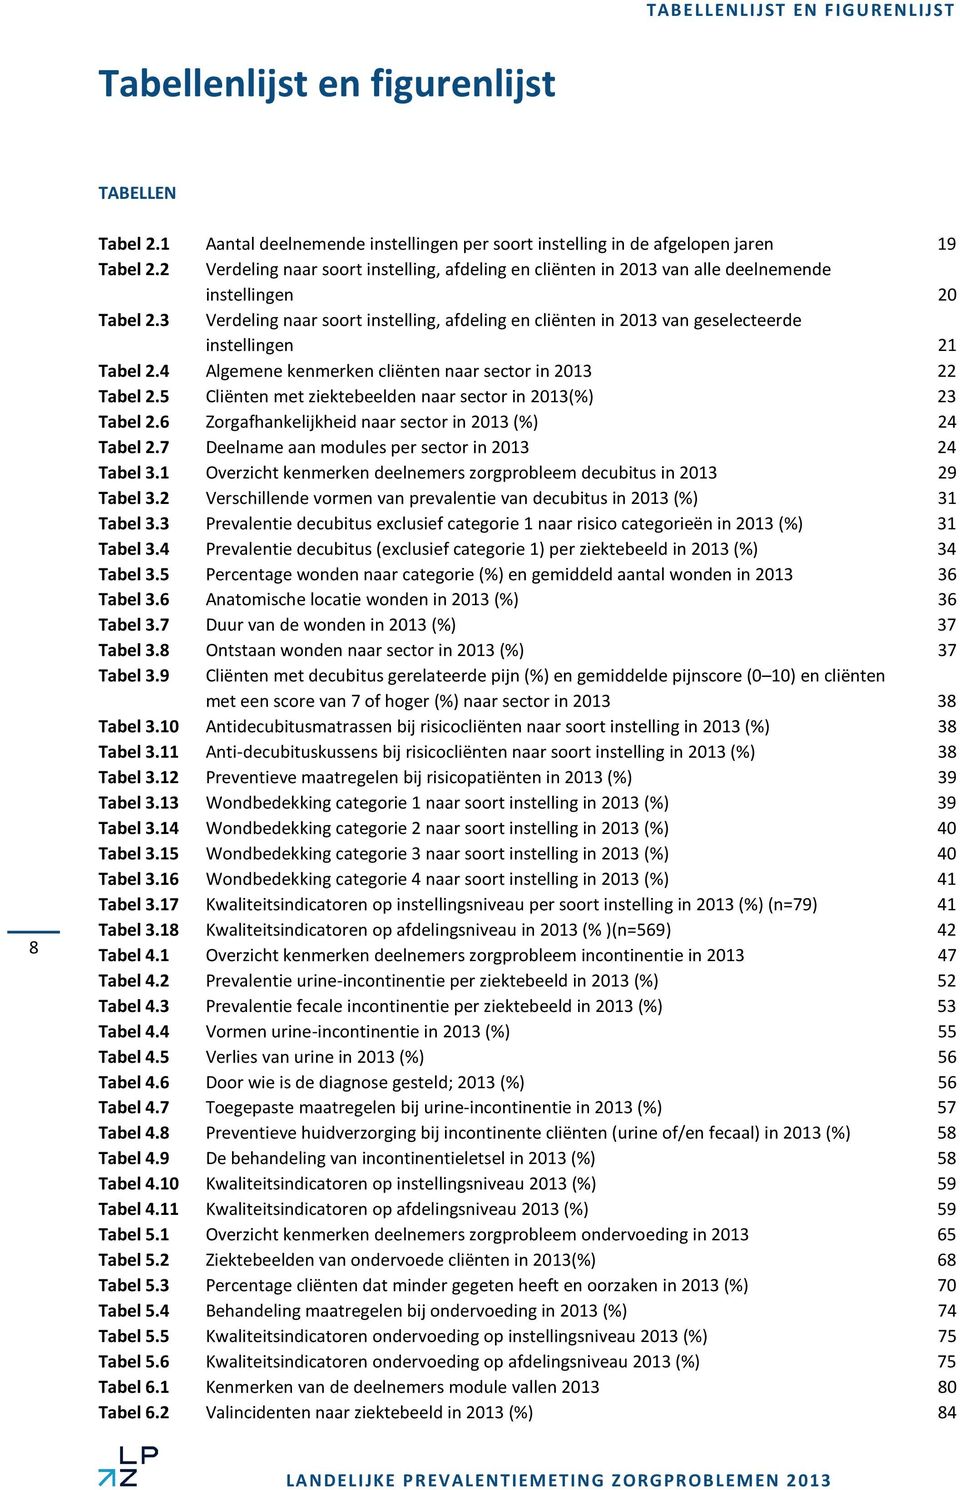 3 Verdeling naar soort instelling, afdeling en cliënten in 2013 van geselecteerde instellingen 21 Tabel 2.4 Algemene kenmerken cliënten naar sector in 2013 22 Tabel 2.